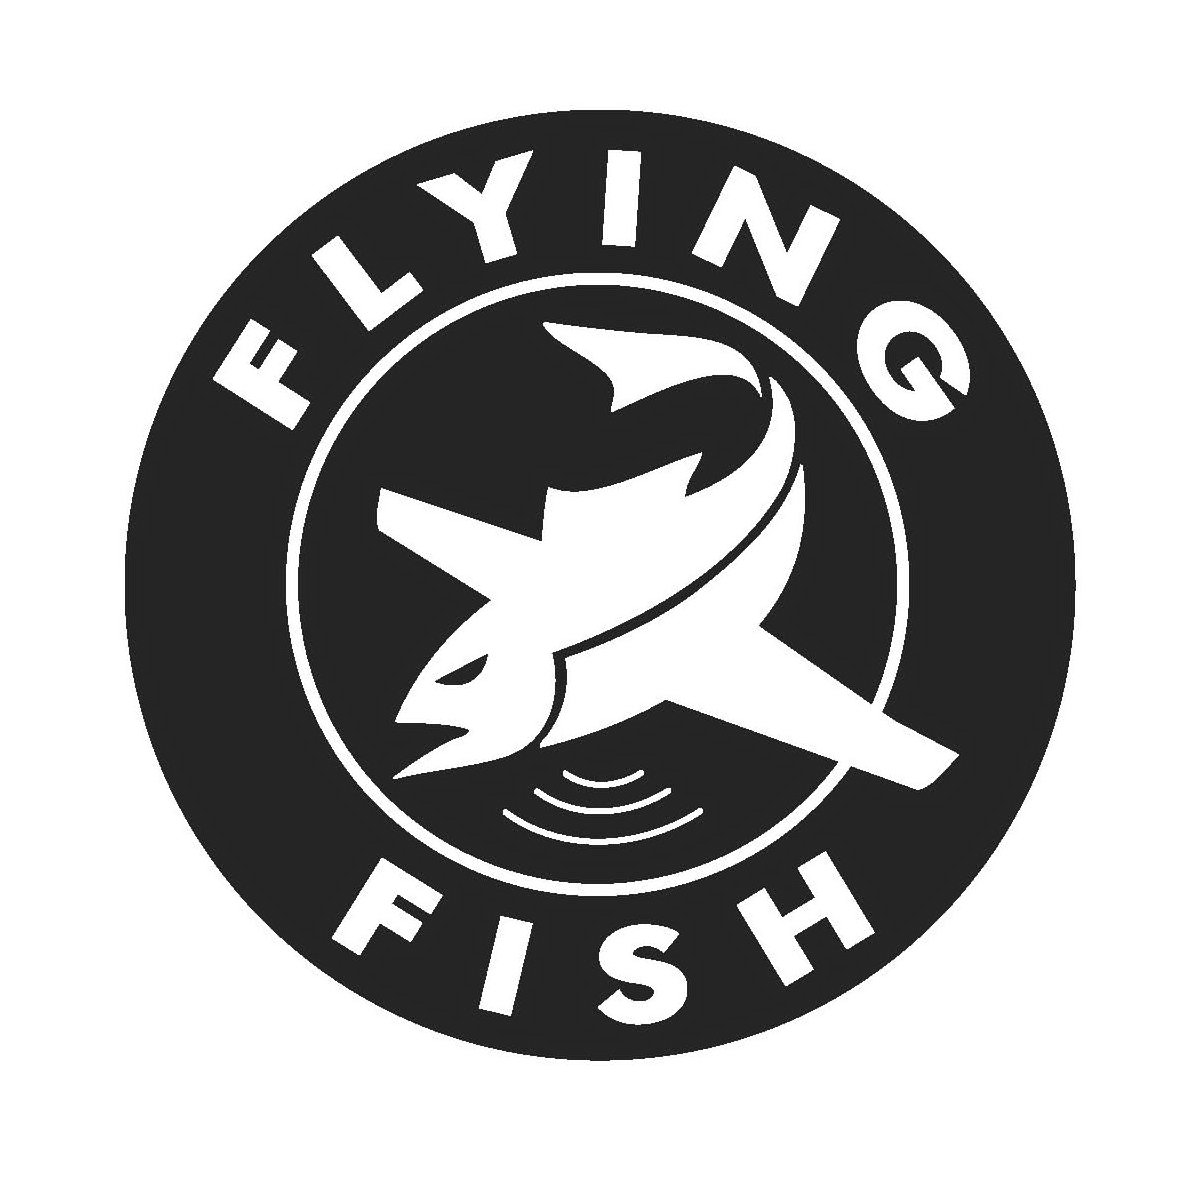 FLYING FISH